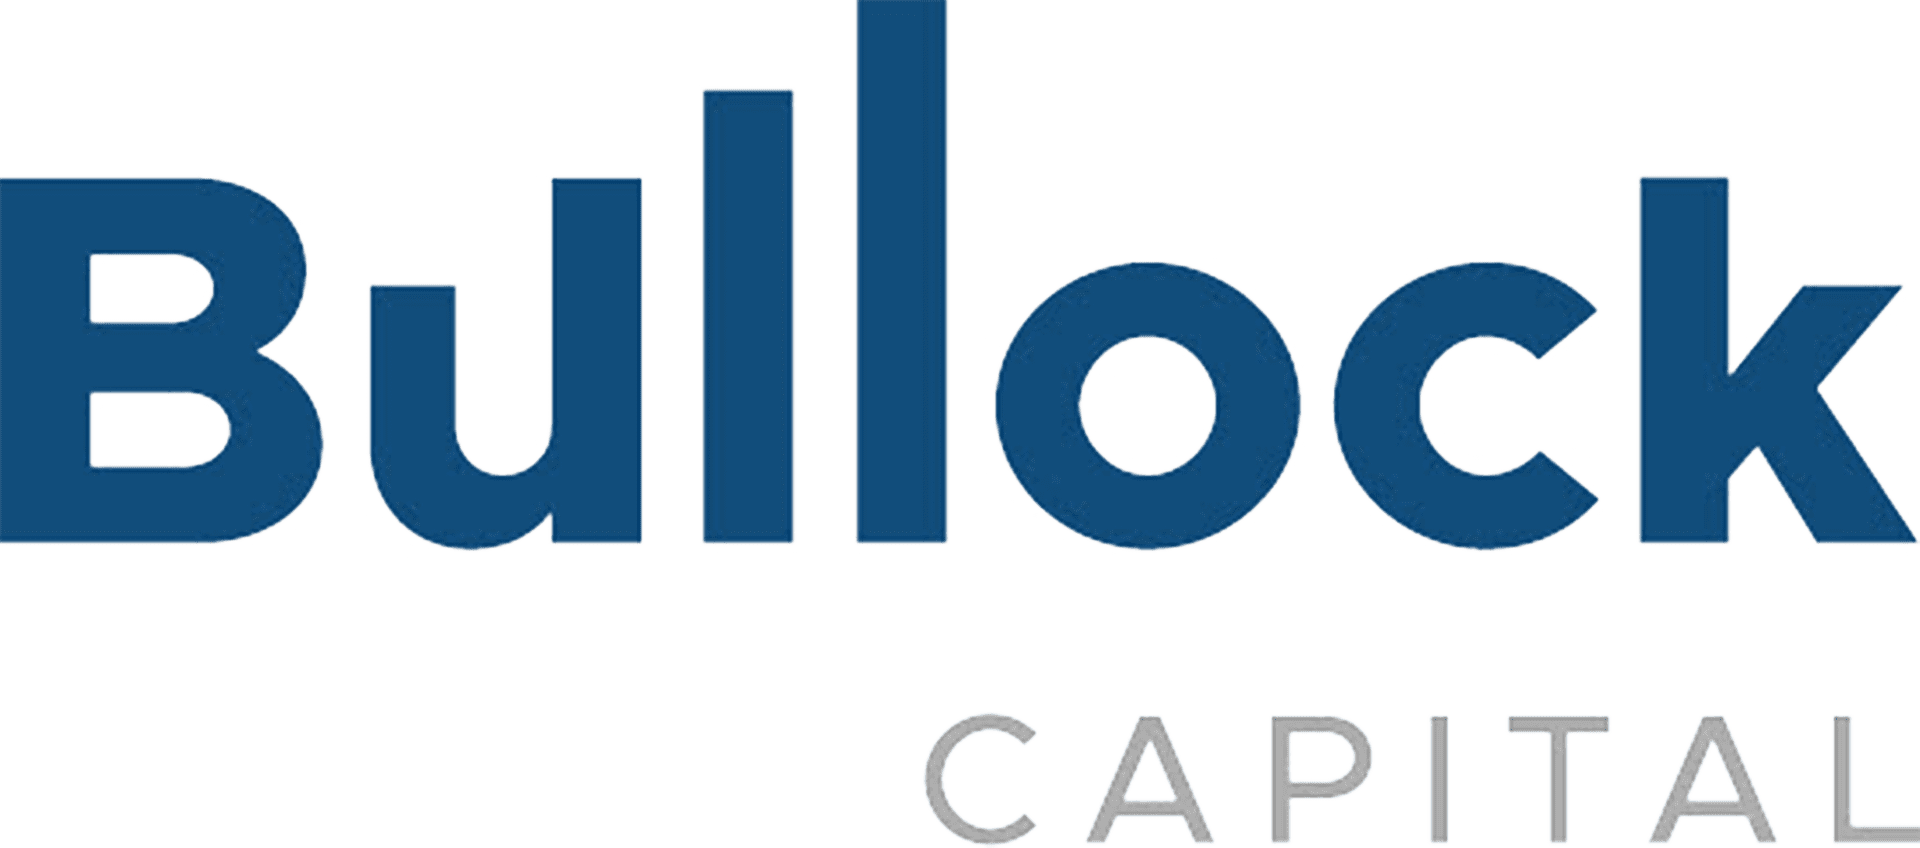 Bullock Capital